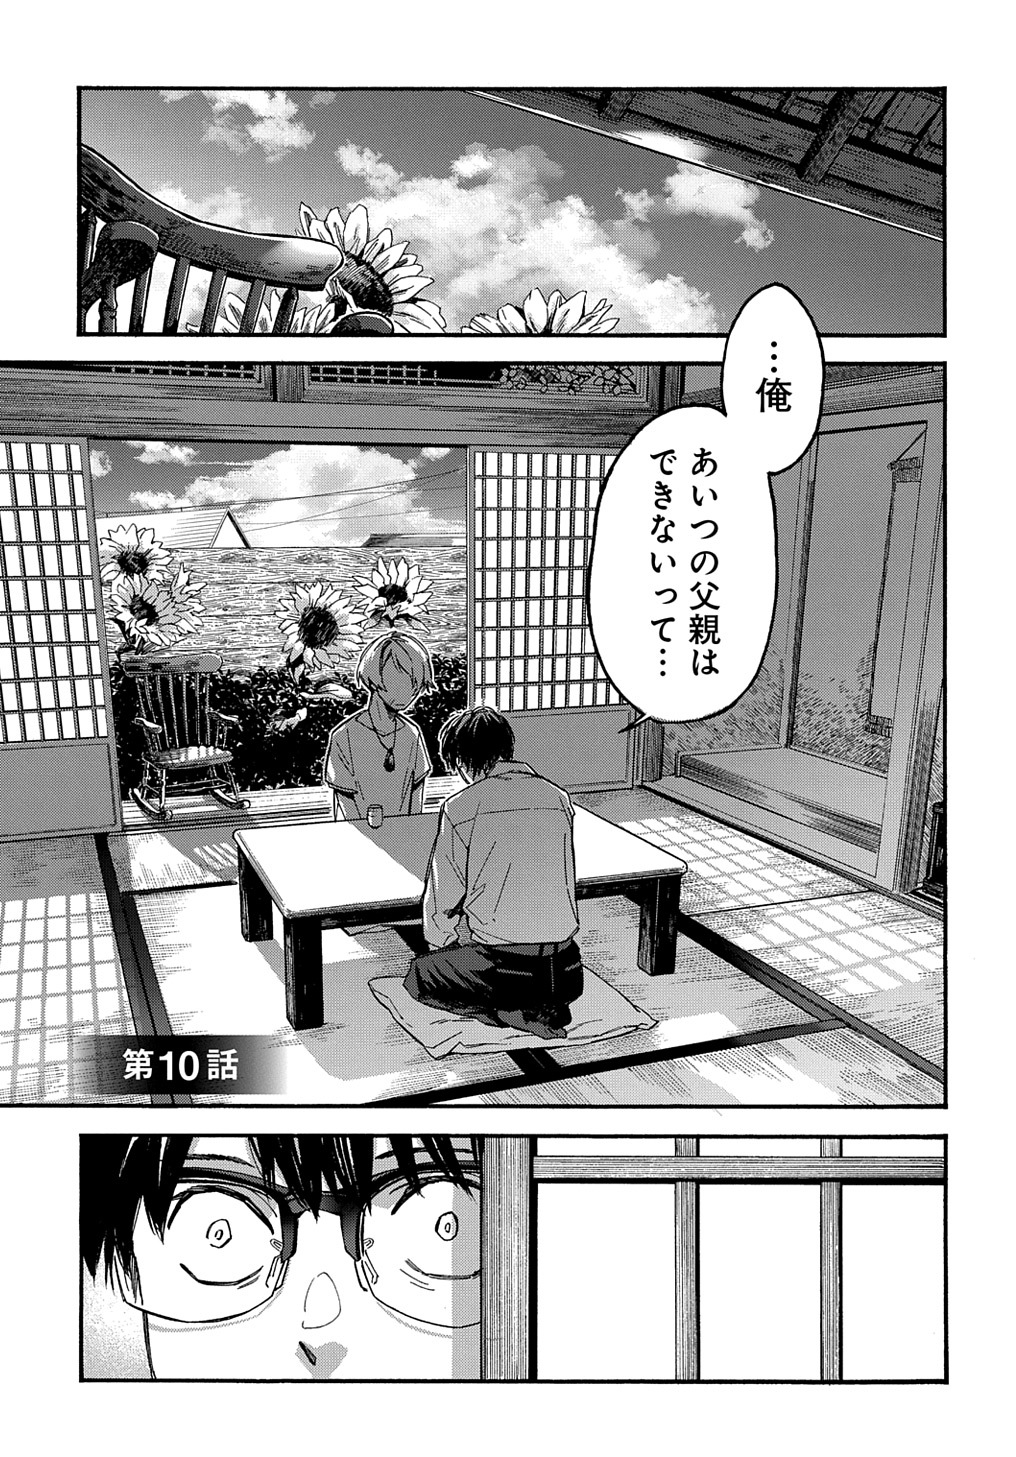 Uraura Hikaru: Shinshin ni Mitsu - Chapter 10 - Page 1